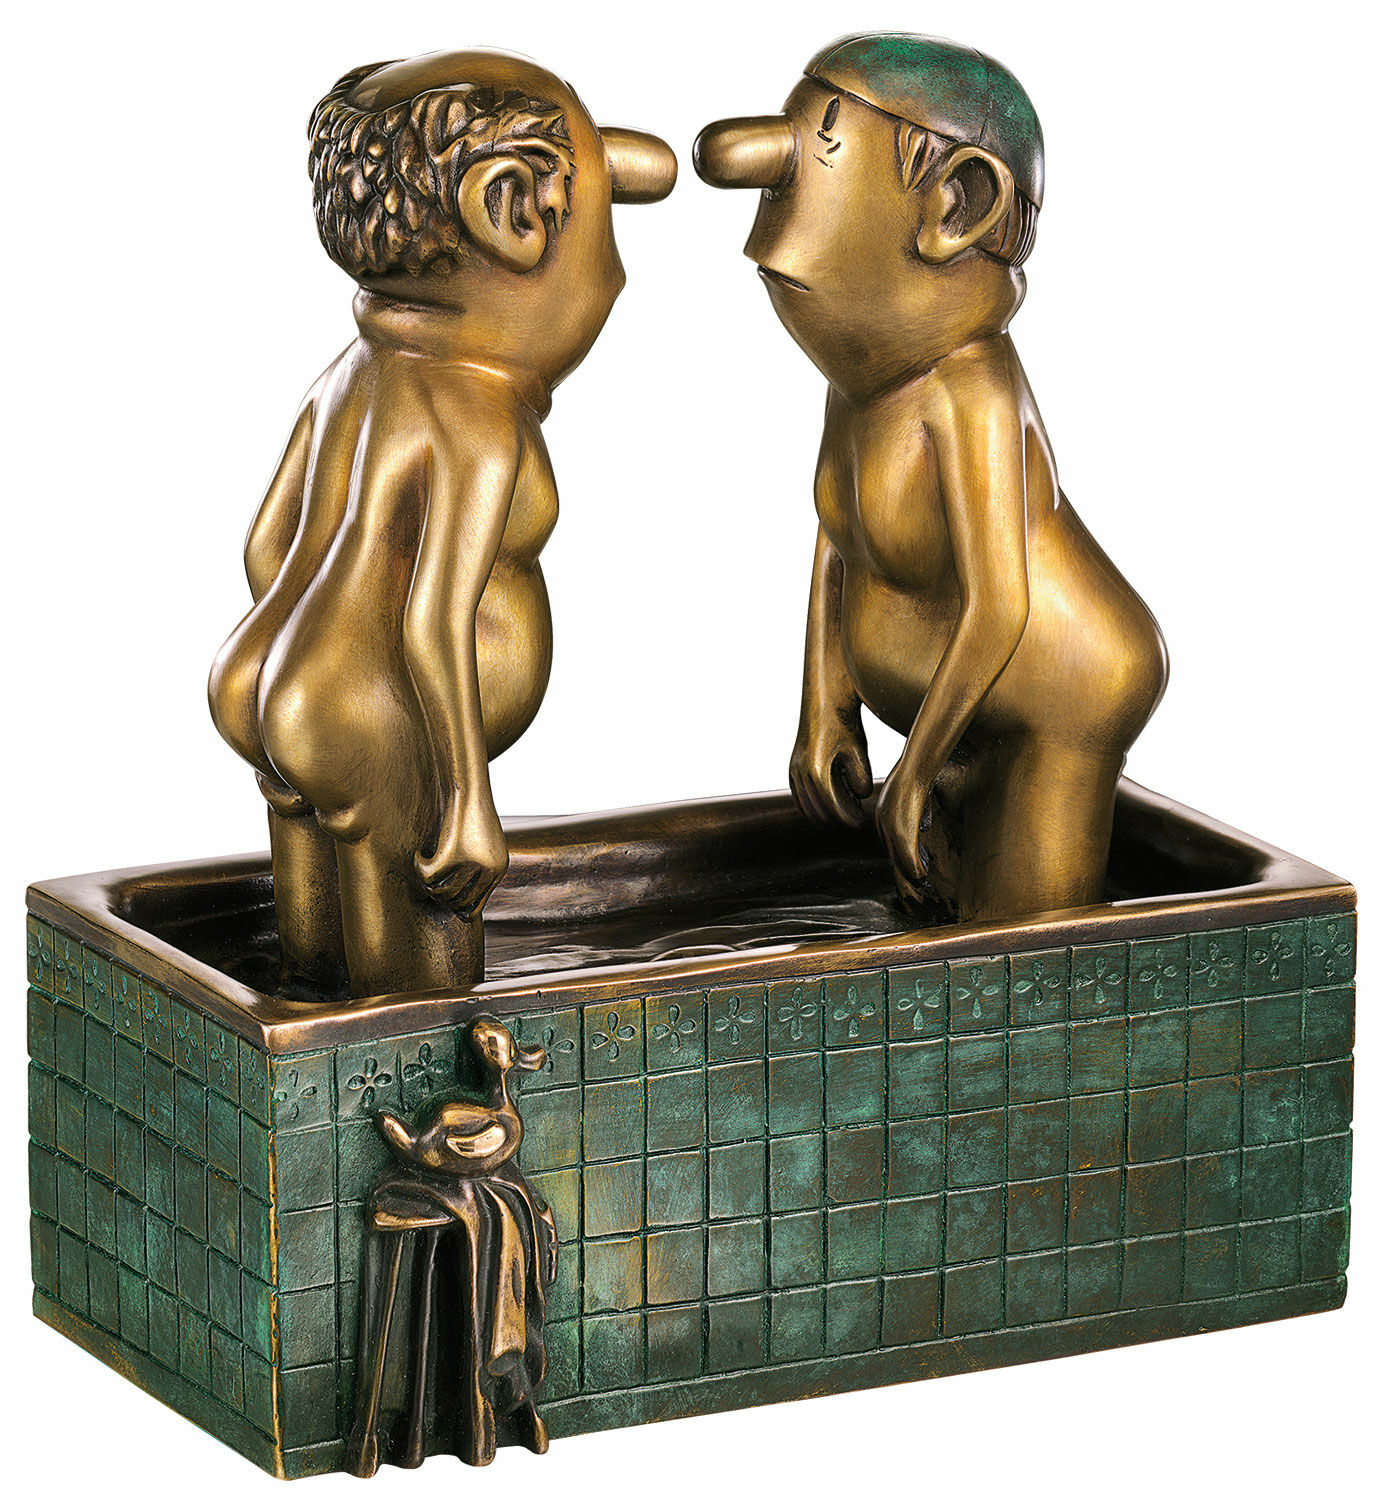 Sculpture "Gentlemen in the Bathtub", bronze by Loriot